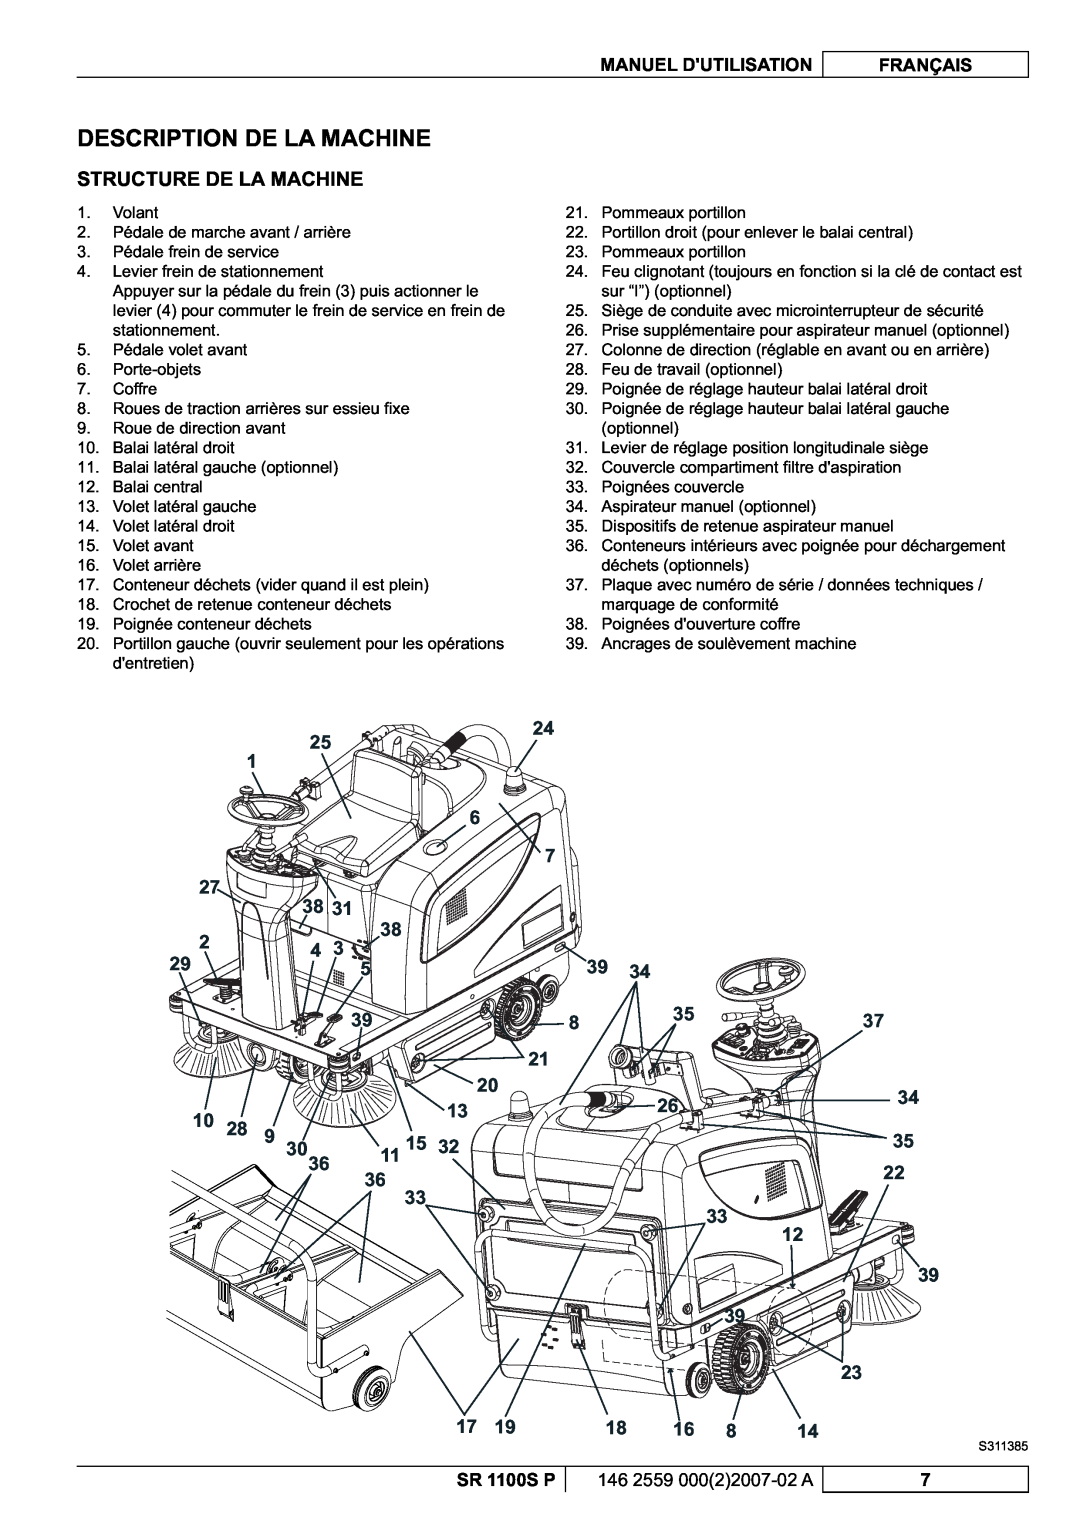 Nilfisk-Advance America SR 1100S manuel dutilisation Description De La Machine, Structure De La Machine, 39 39 23 